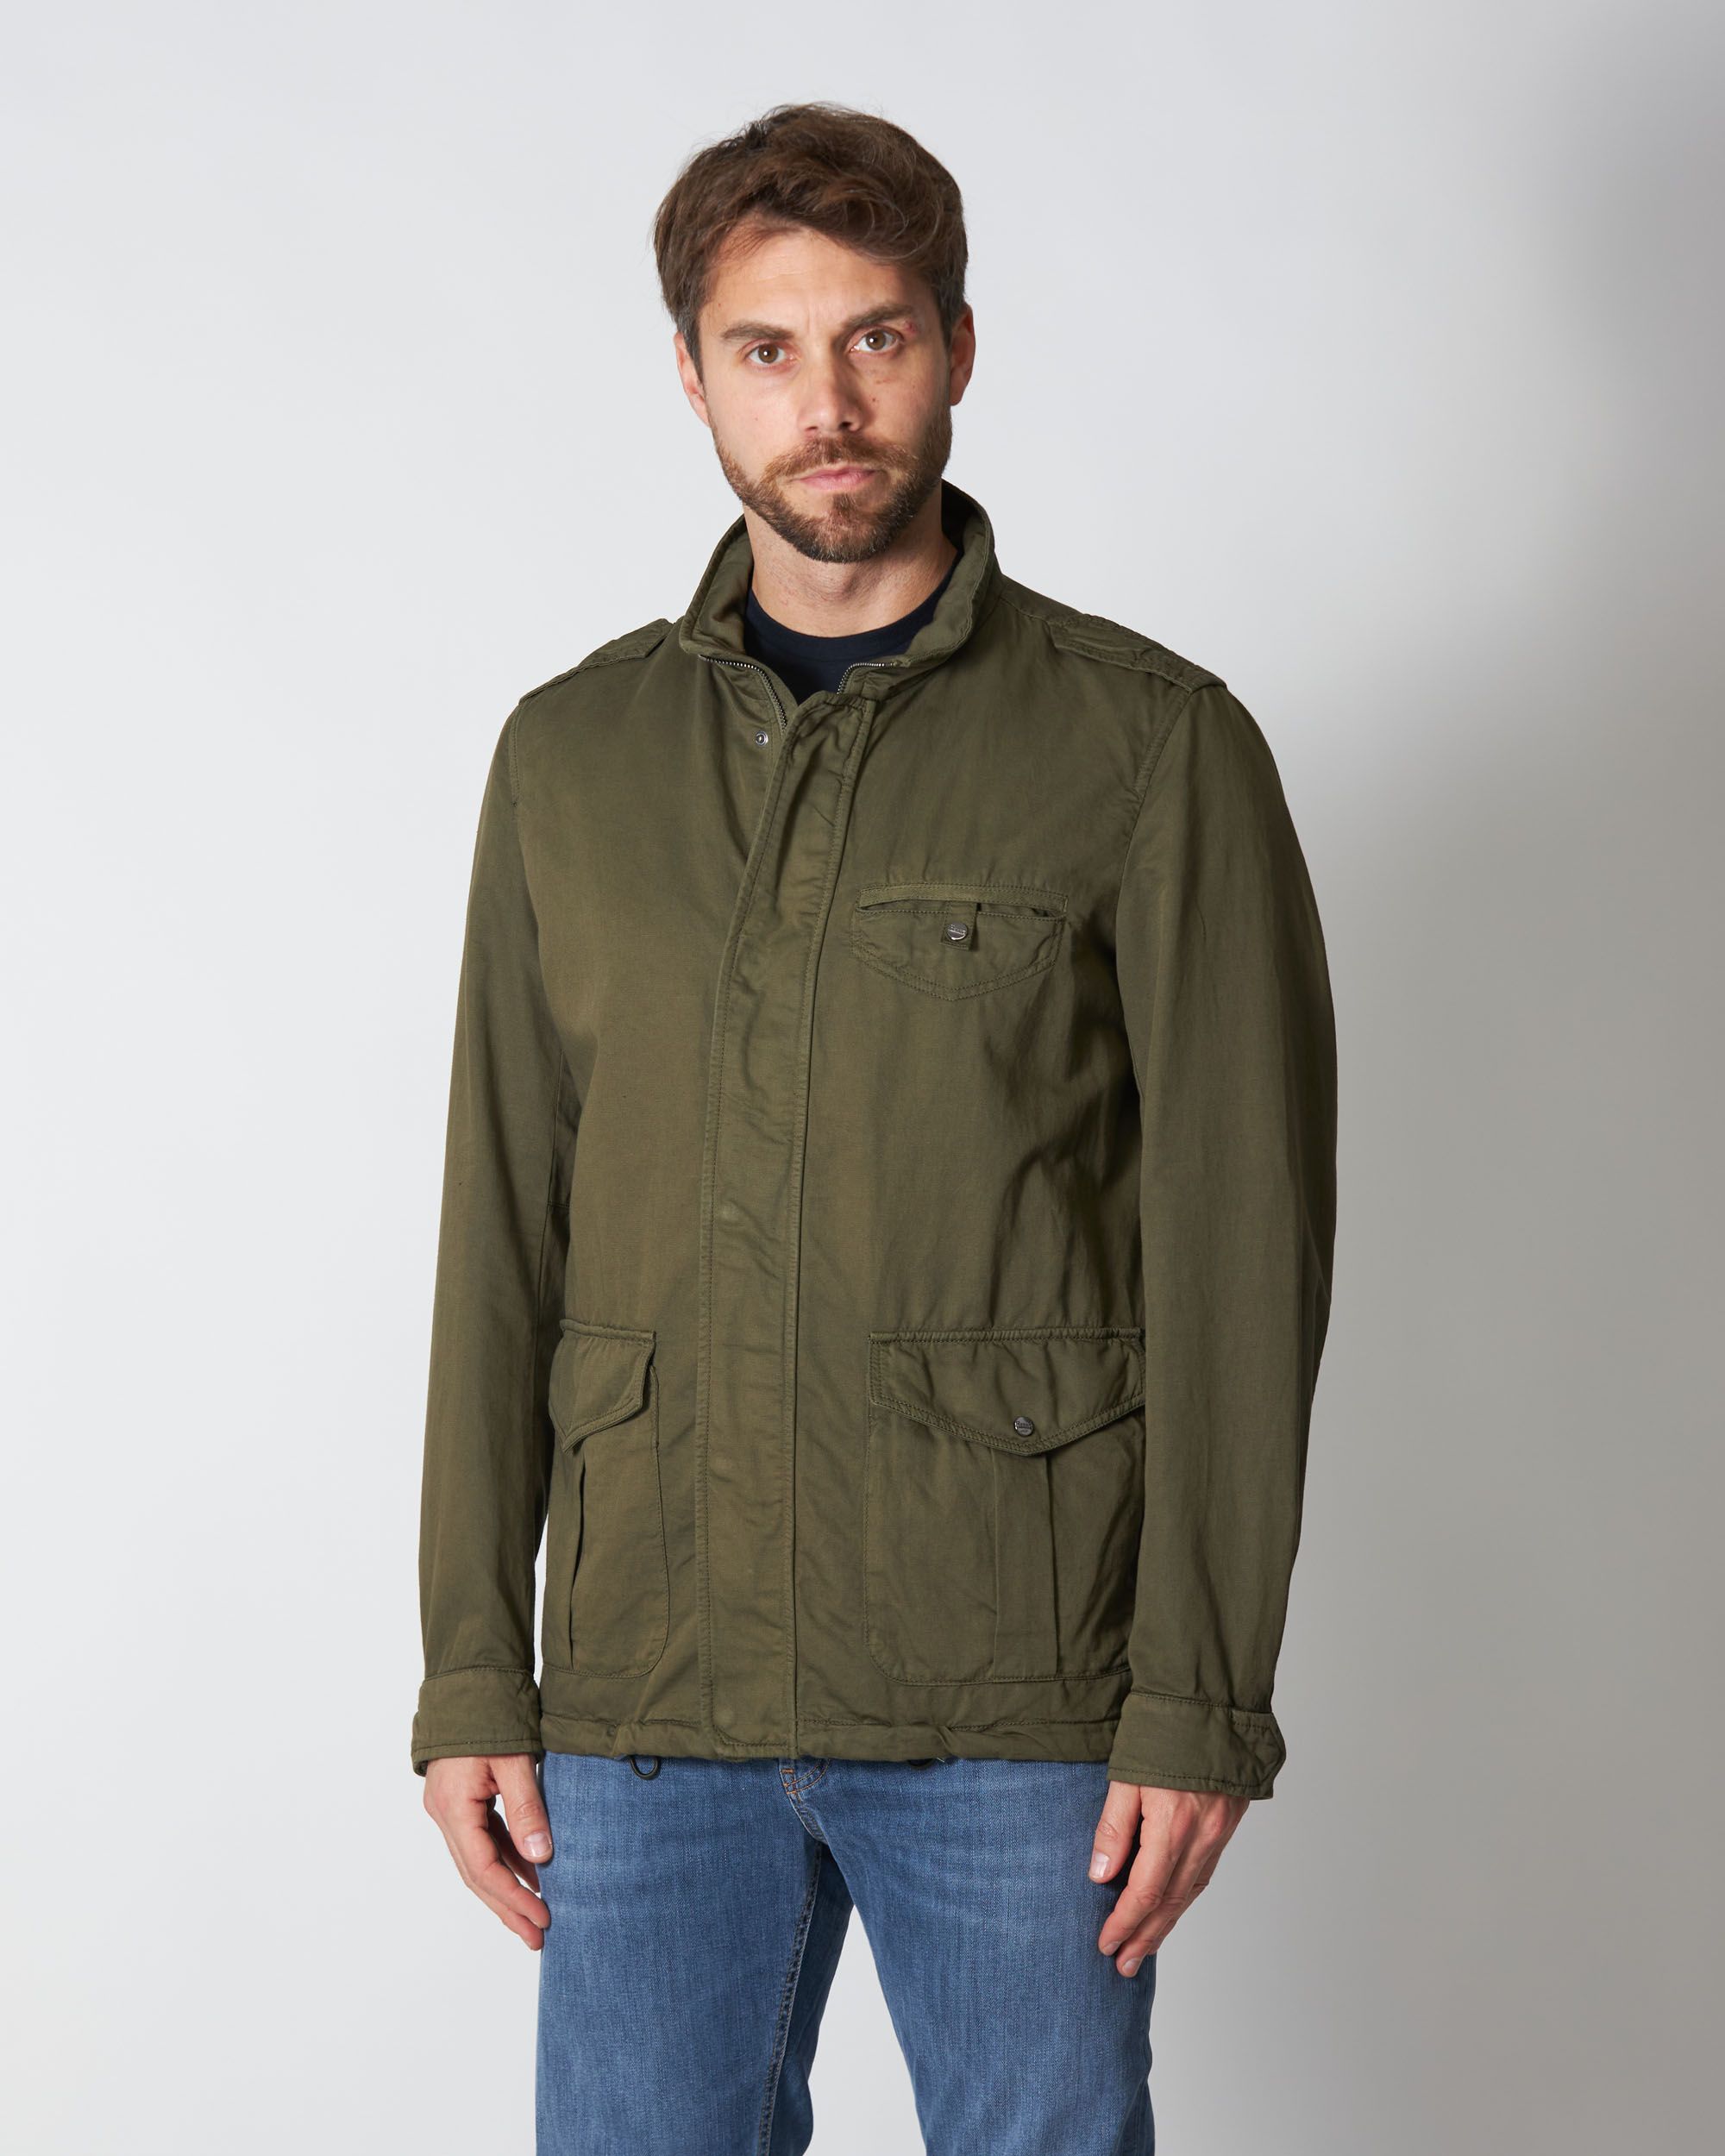 Field Jacket in cotone e lino sfoderata color militare